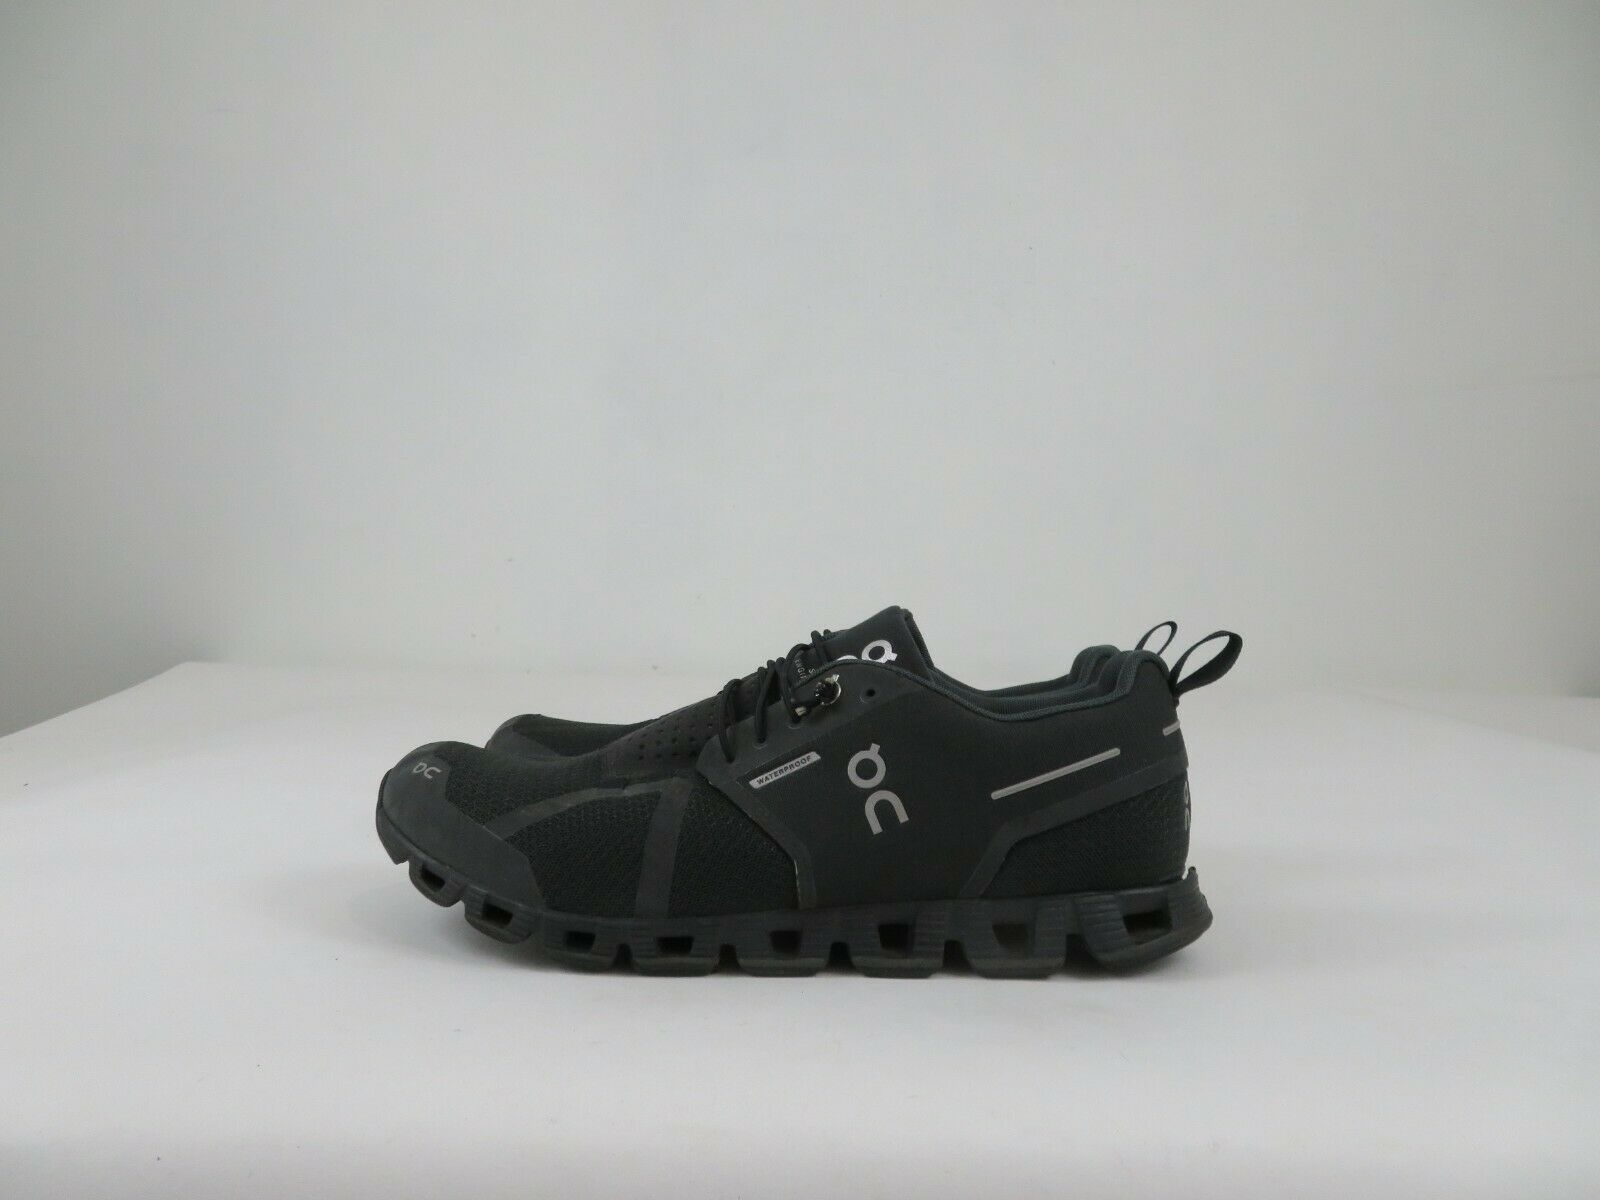 On Cloud Waterproof Shoes Mens 9.5 Black Running Walking Sneaker FLAW READ***